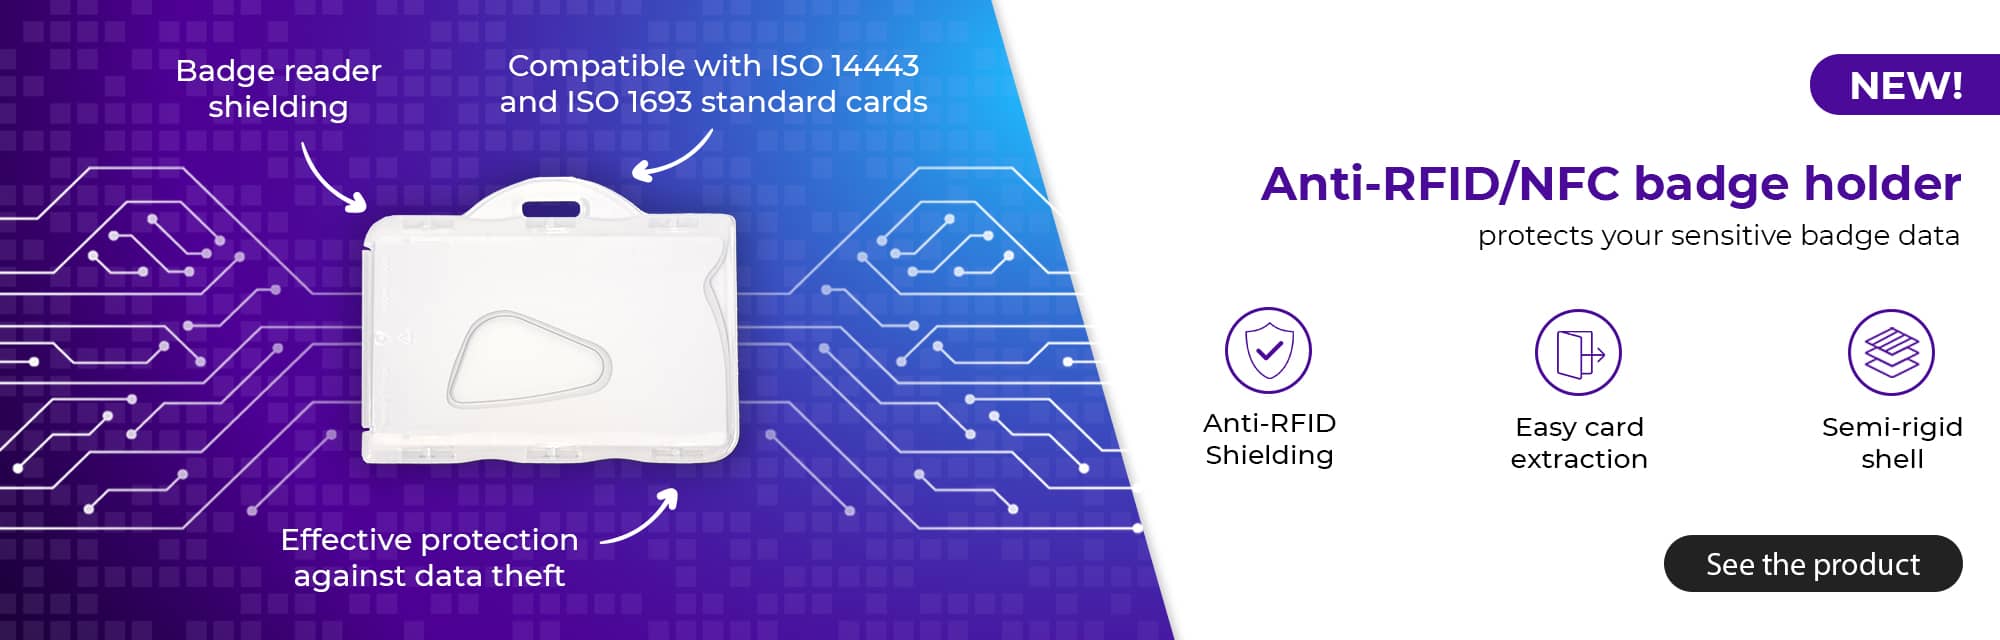 Semi-rigid anti-RFID/NFC badge holder